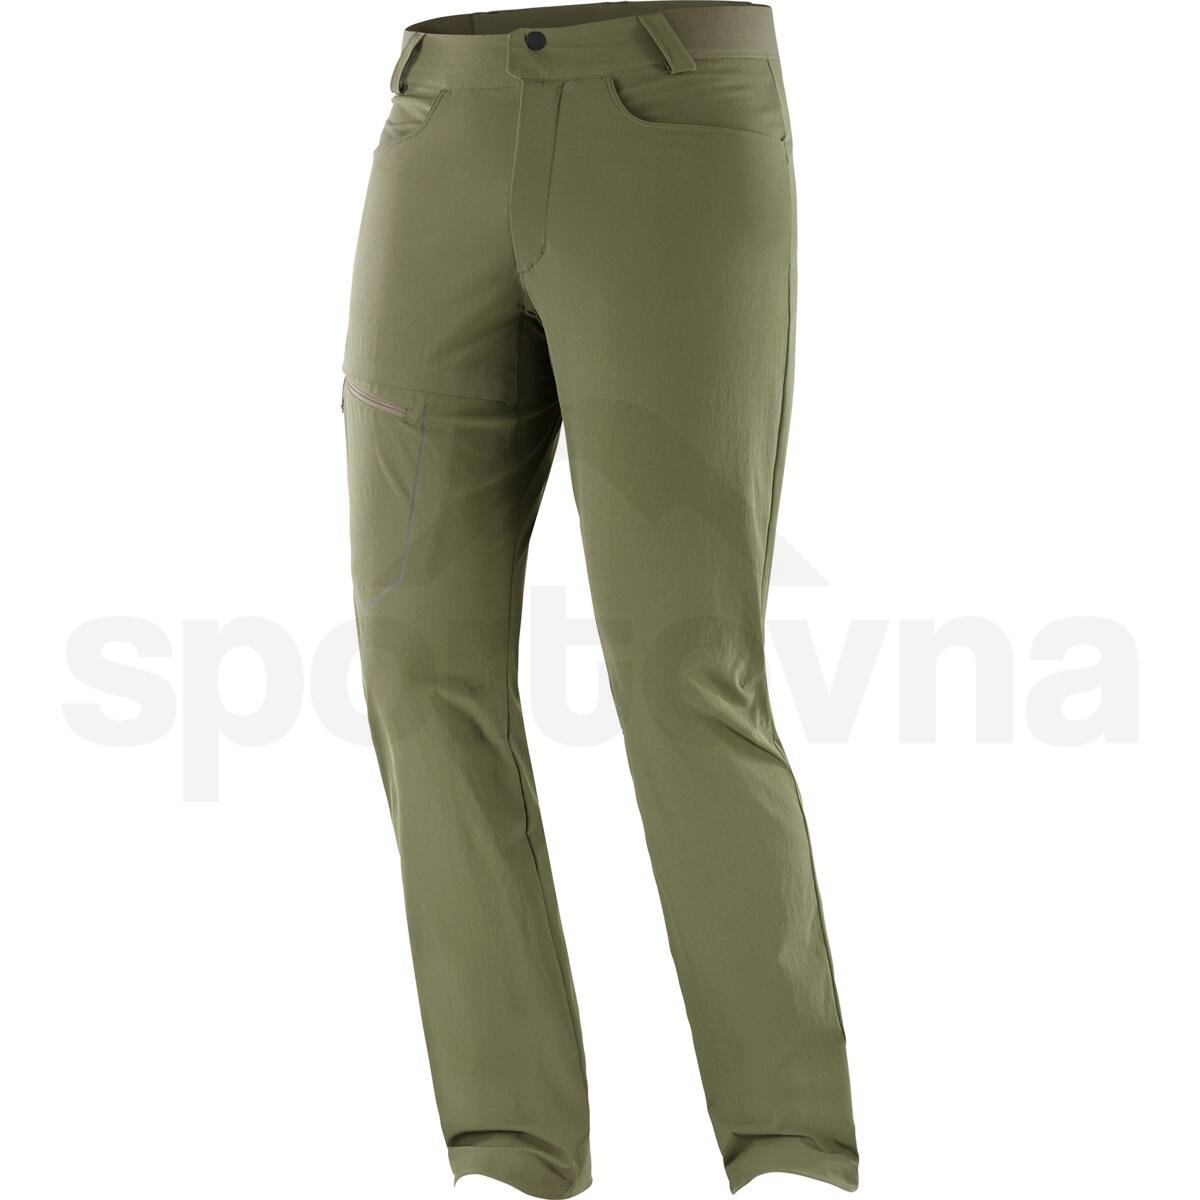 Kalhoty Salomon Wayfarer Pants M - zelená (standardní délka)